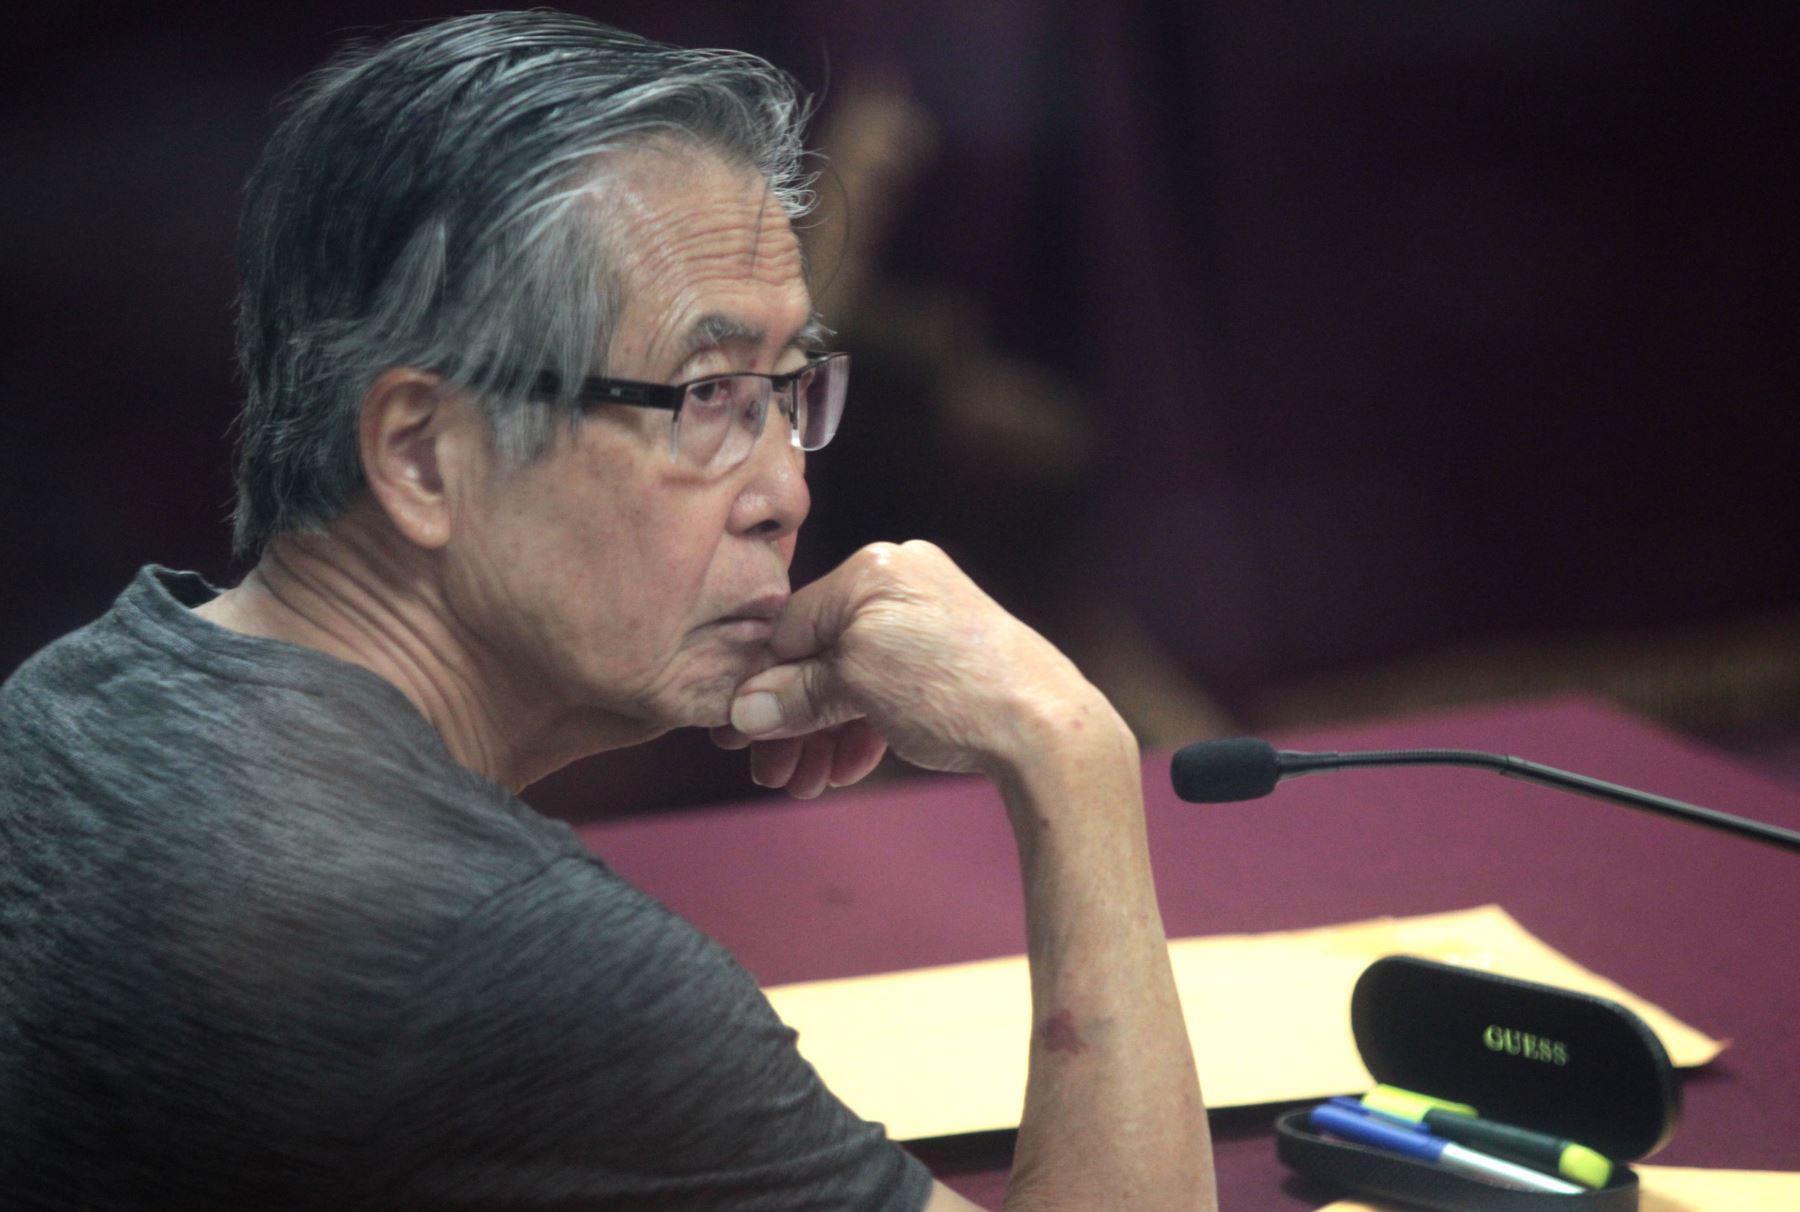 PJ: Alberto Fujimori debe seguir su tratamiento médico en prisión